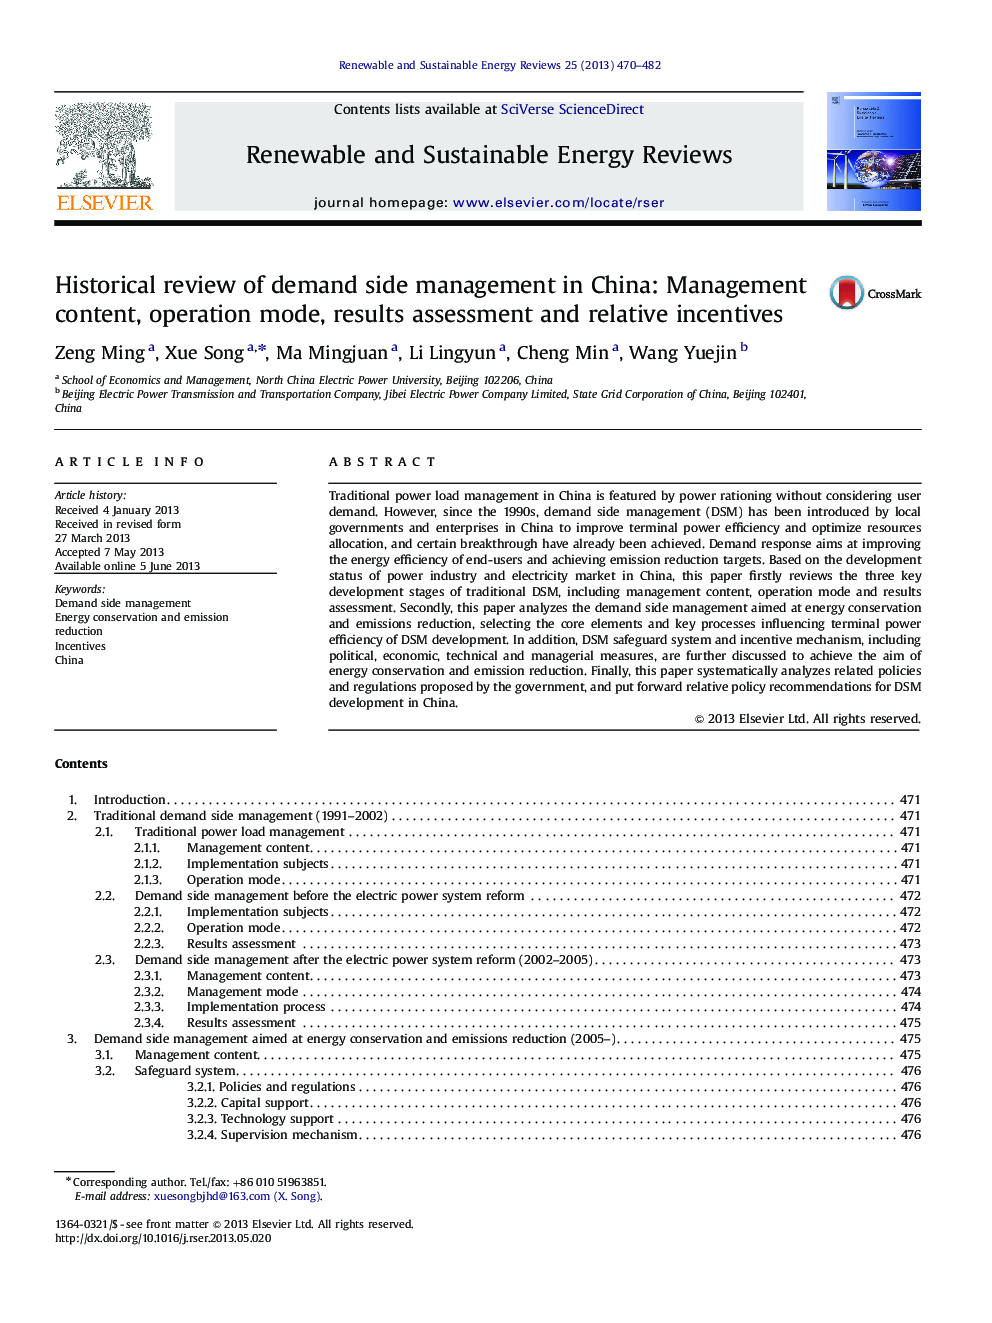 بررسی تاریخی مدیریت تقاضا در چین: محتوای مدیریت، حالت عمل، ارزیابی نتایج و انگیزه های نسبی 